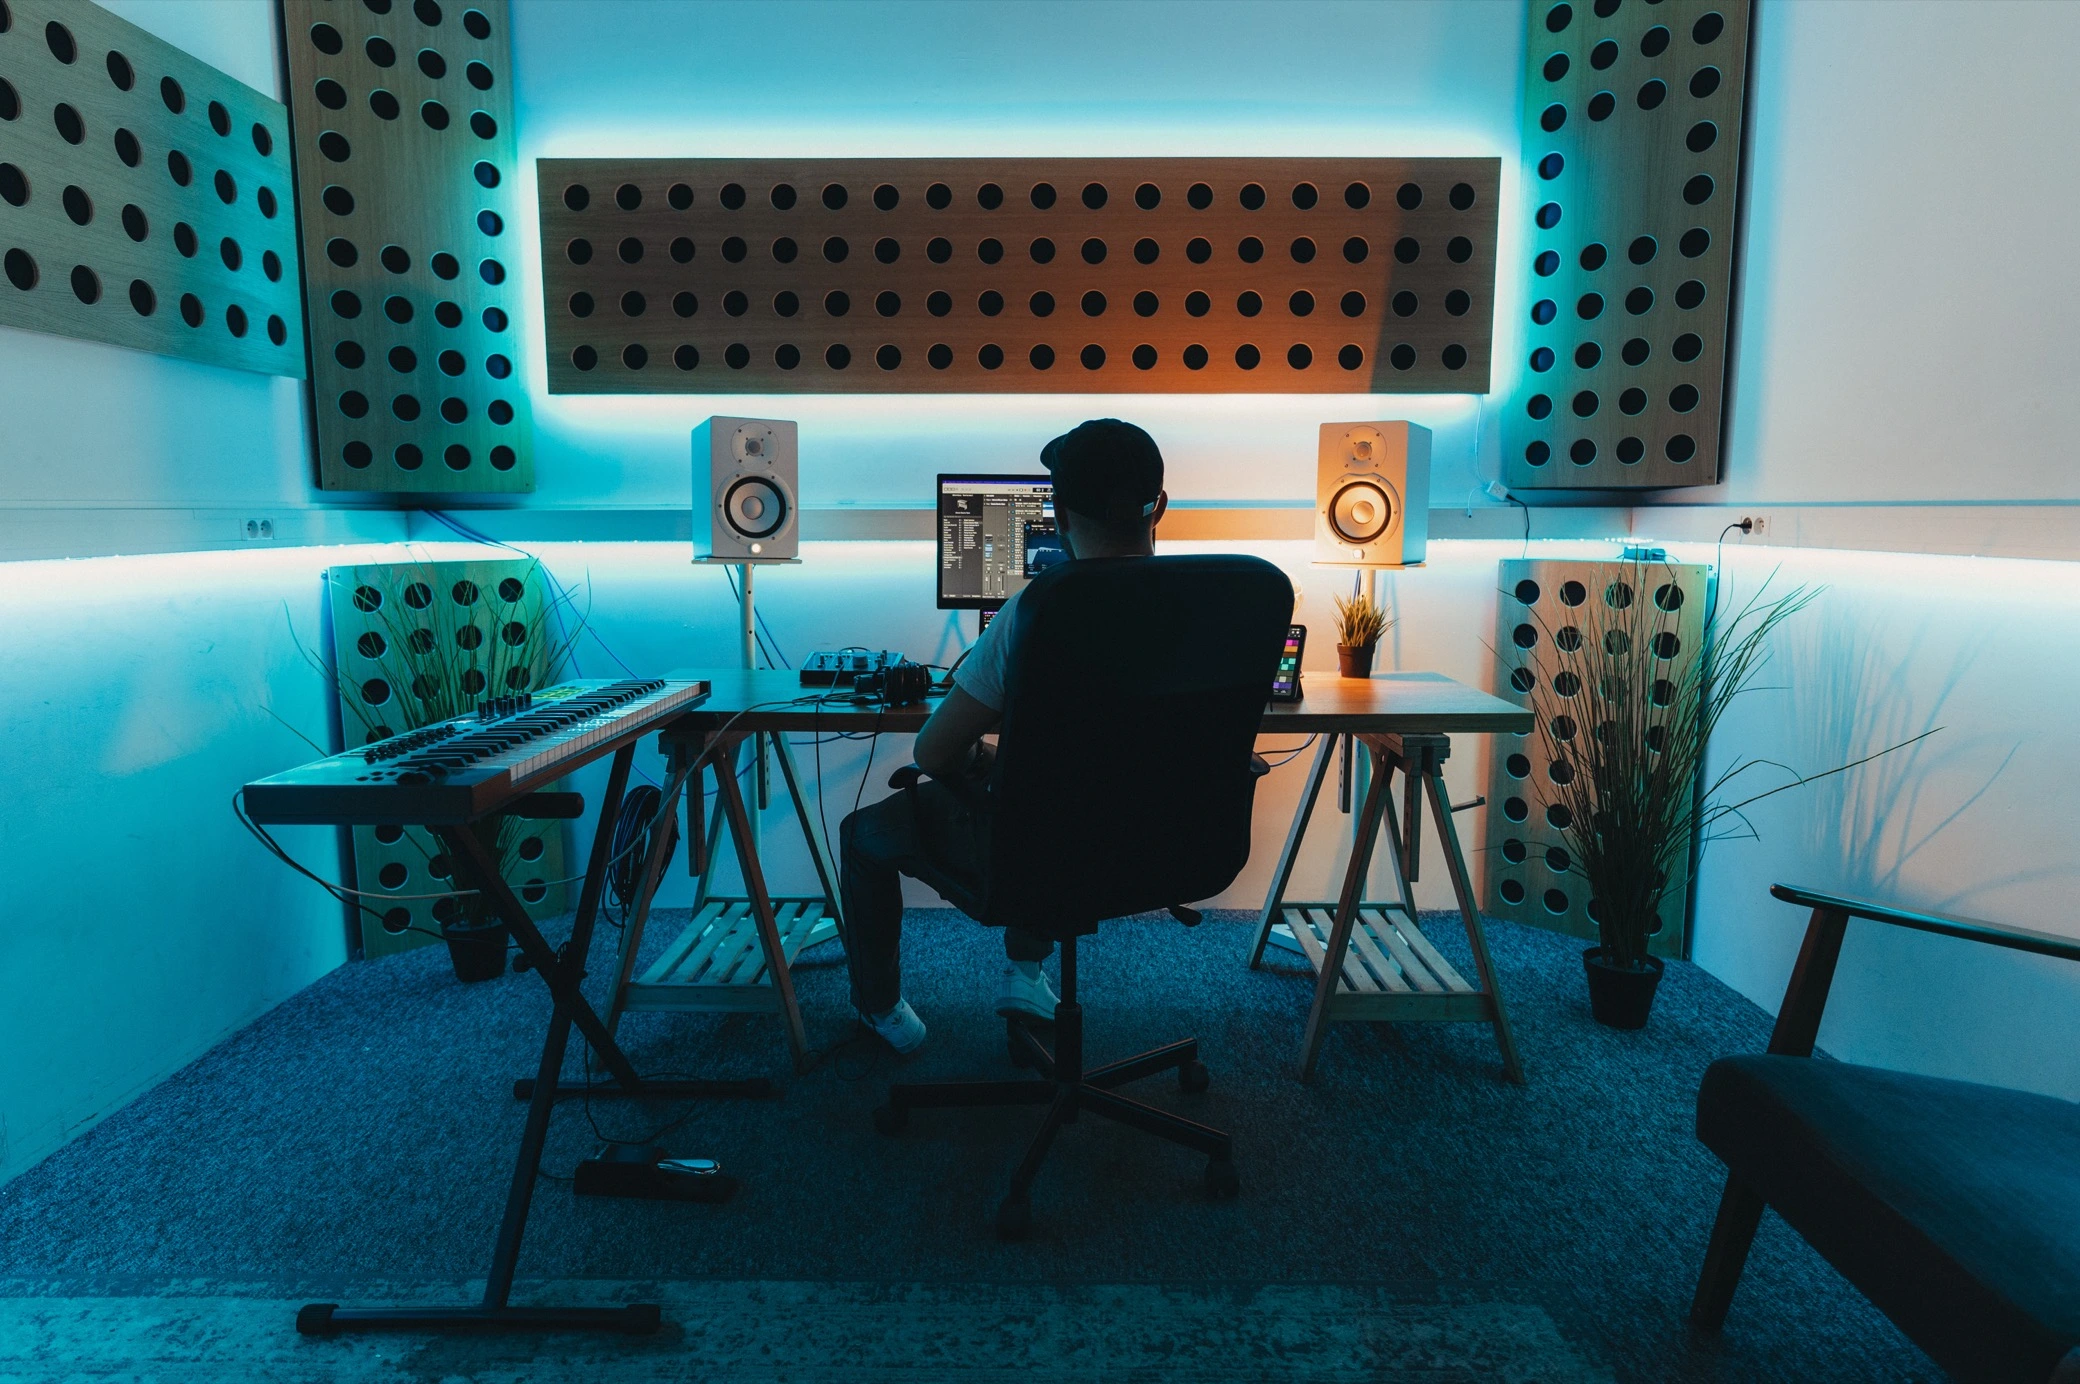 Professional custom music studio